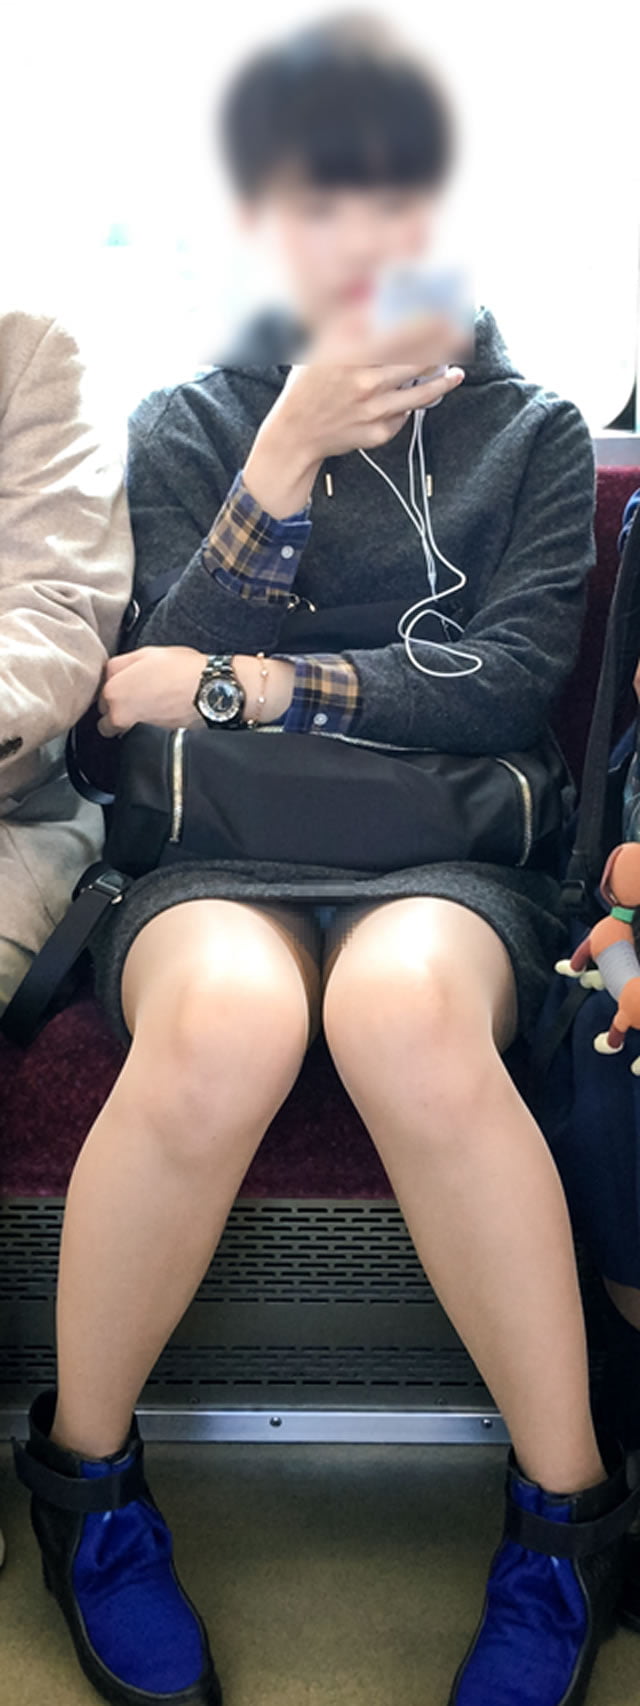 盗撮エロ画像｜電車内で正面に座った女性のパンチラがすげーエロいと思えるまとめ2 44枚